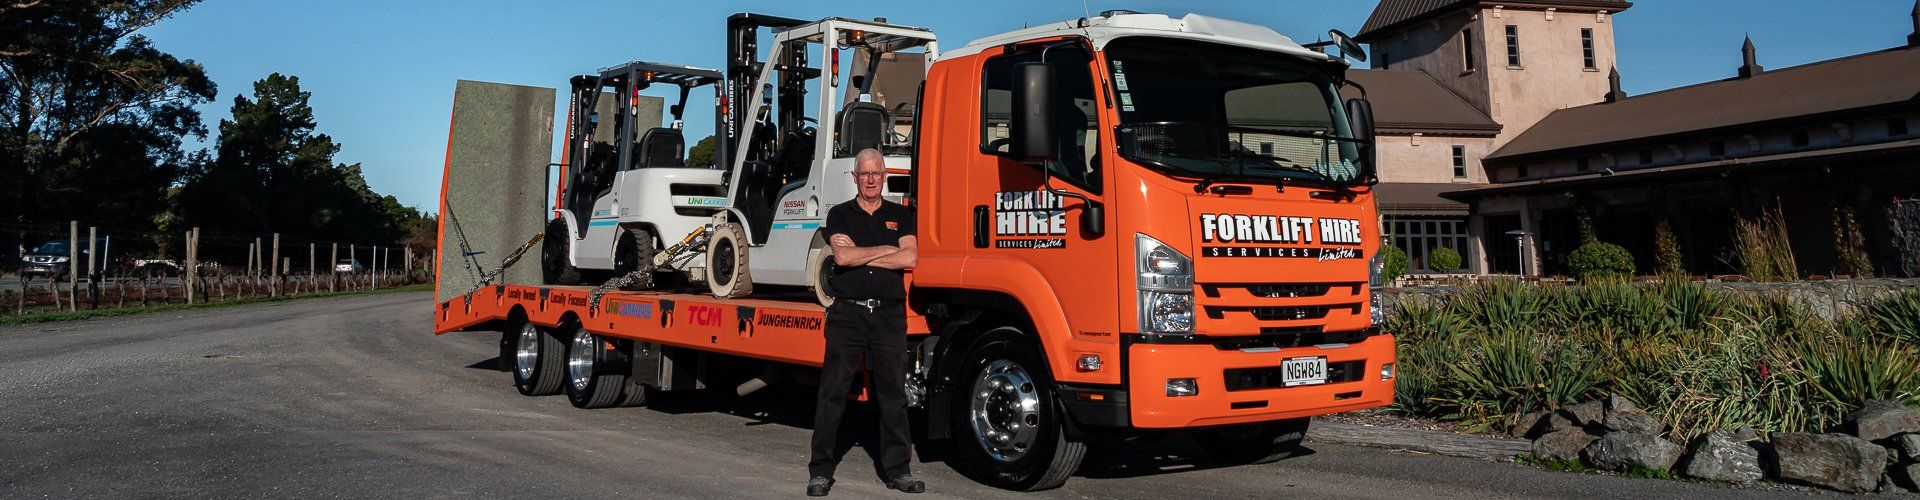 Transporter vehicle for Forklift Hire Services Ltd in Blenheim NZ